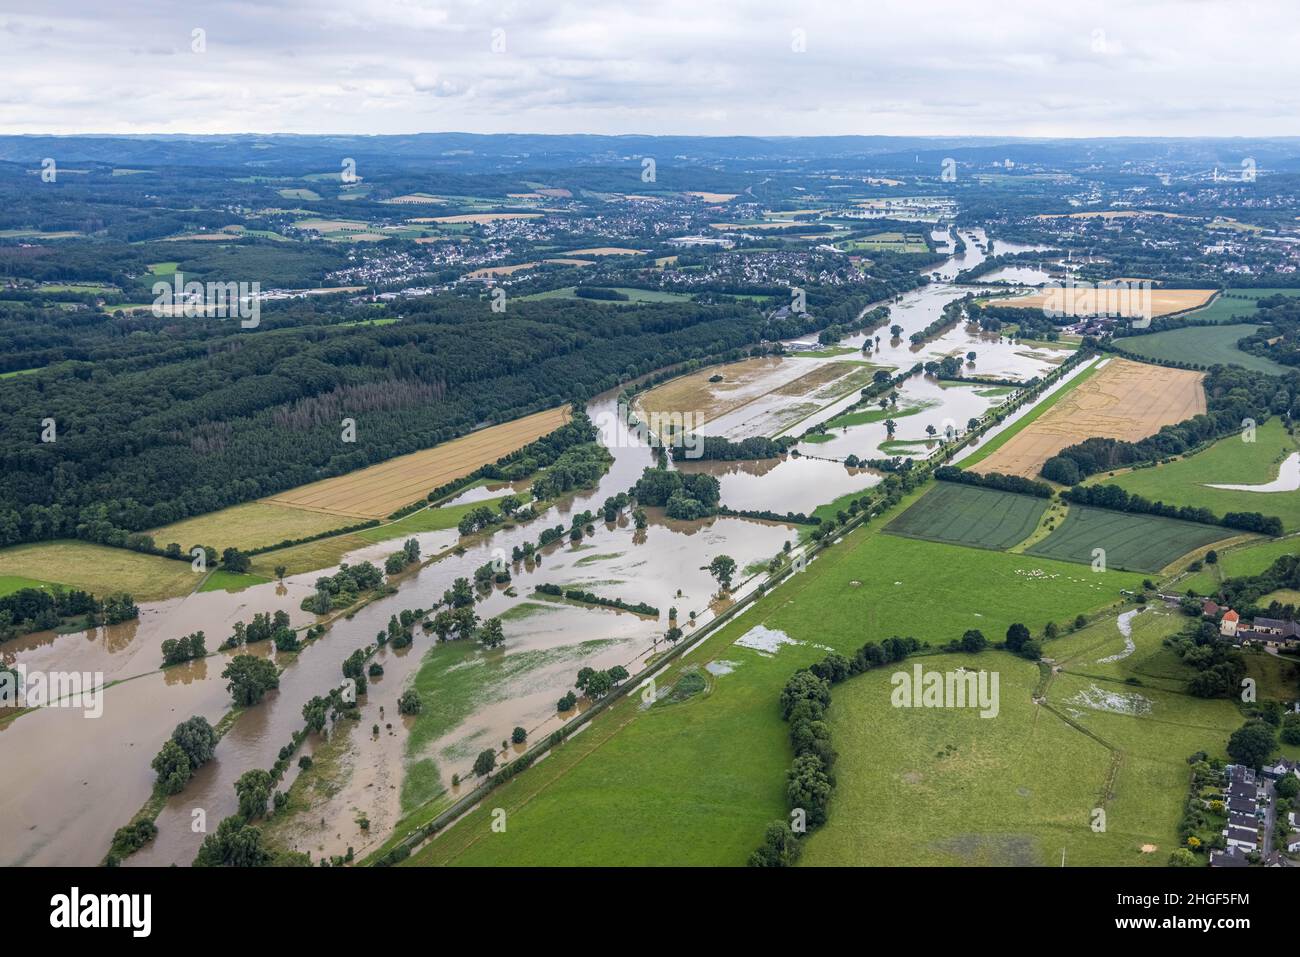 Vista aerea, alluvione della Ruhr, Geisecke, Schwerte, area della Ruhr, Renania settentrionale-Vestfalia, Germania, DE, Europa, vista degli uccelli, fotografia aerea, fotografia aerea Foto Stock